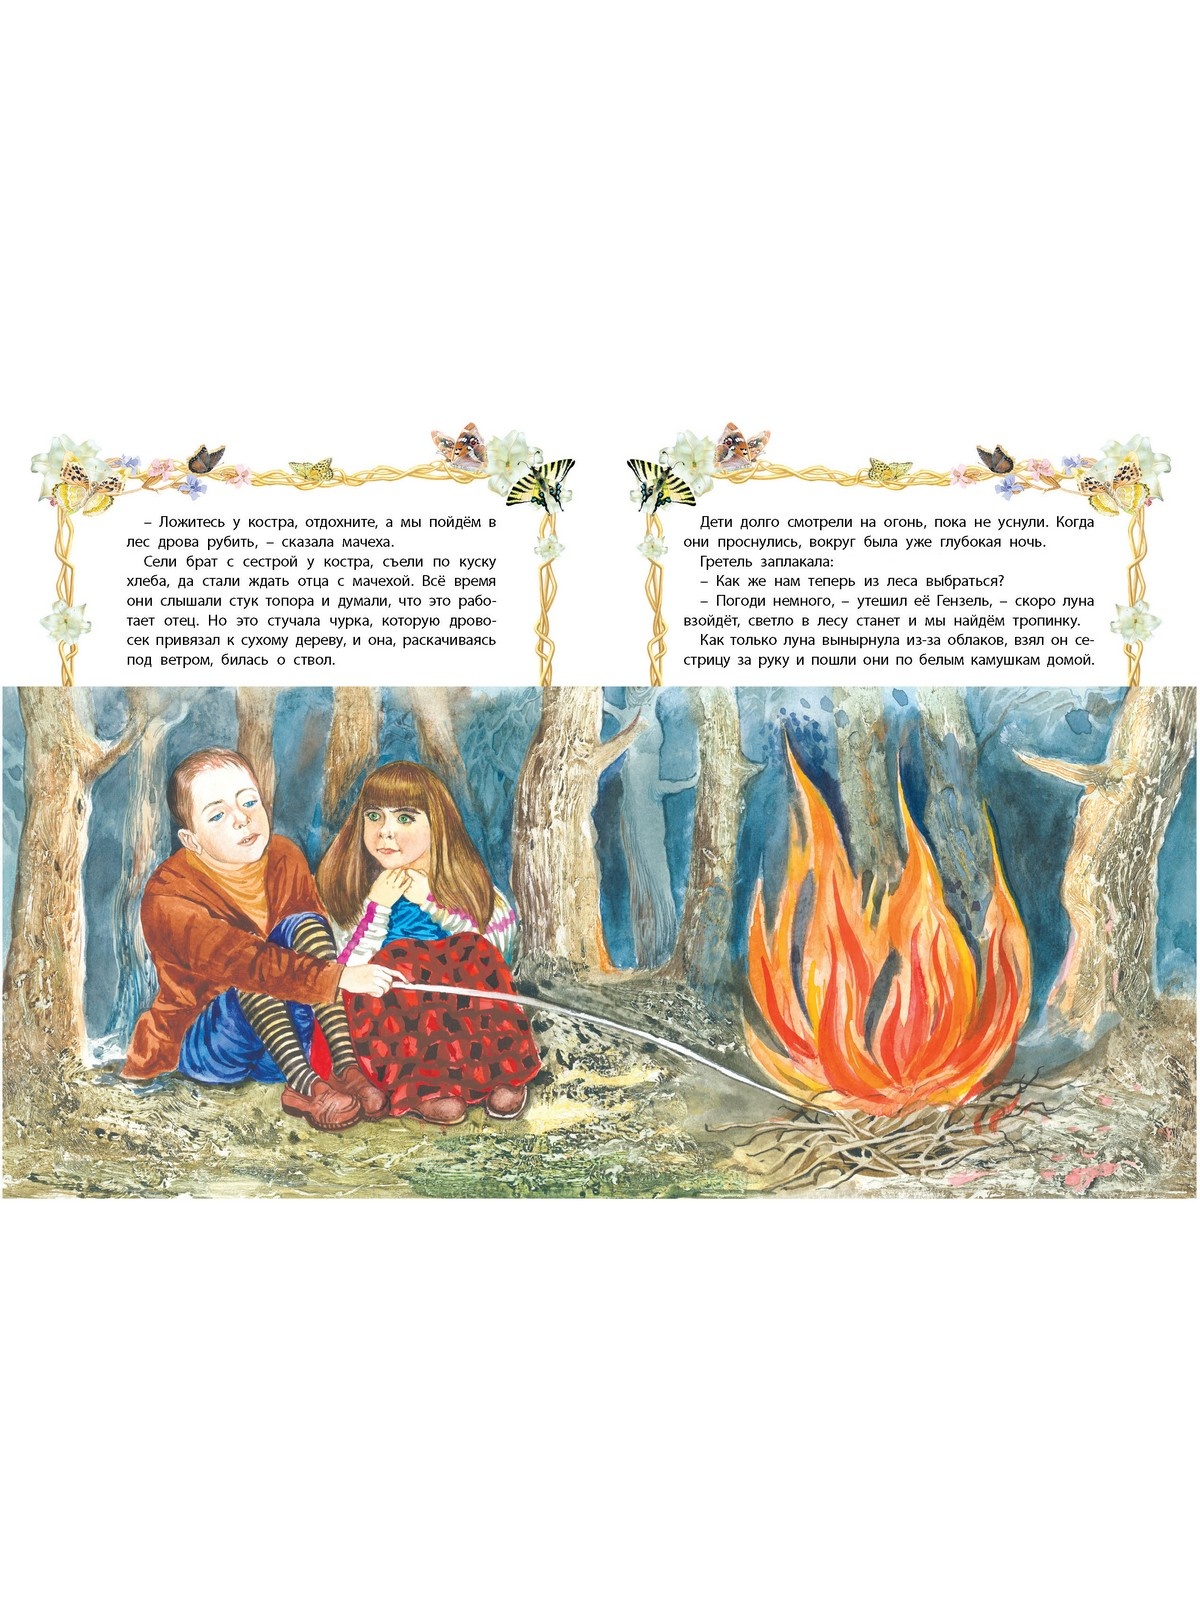 Детские сказки онлайн: читать и слушать – рассказы и аудиосказки для детей!